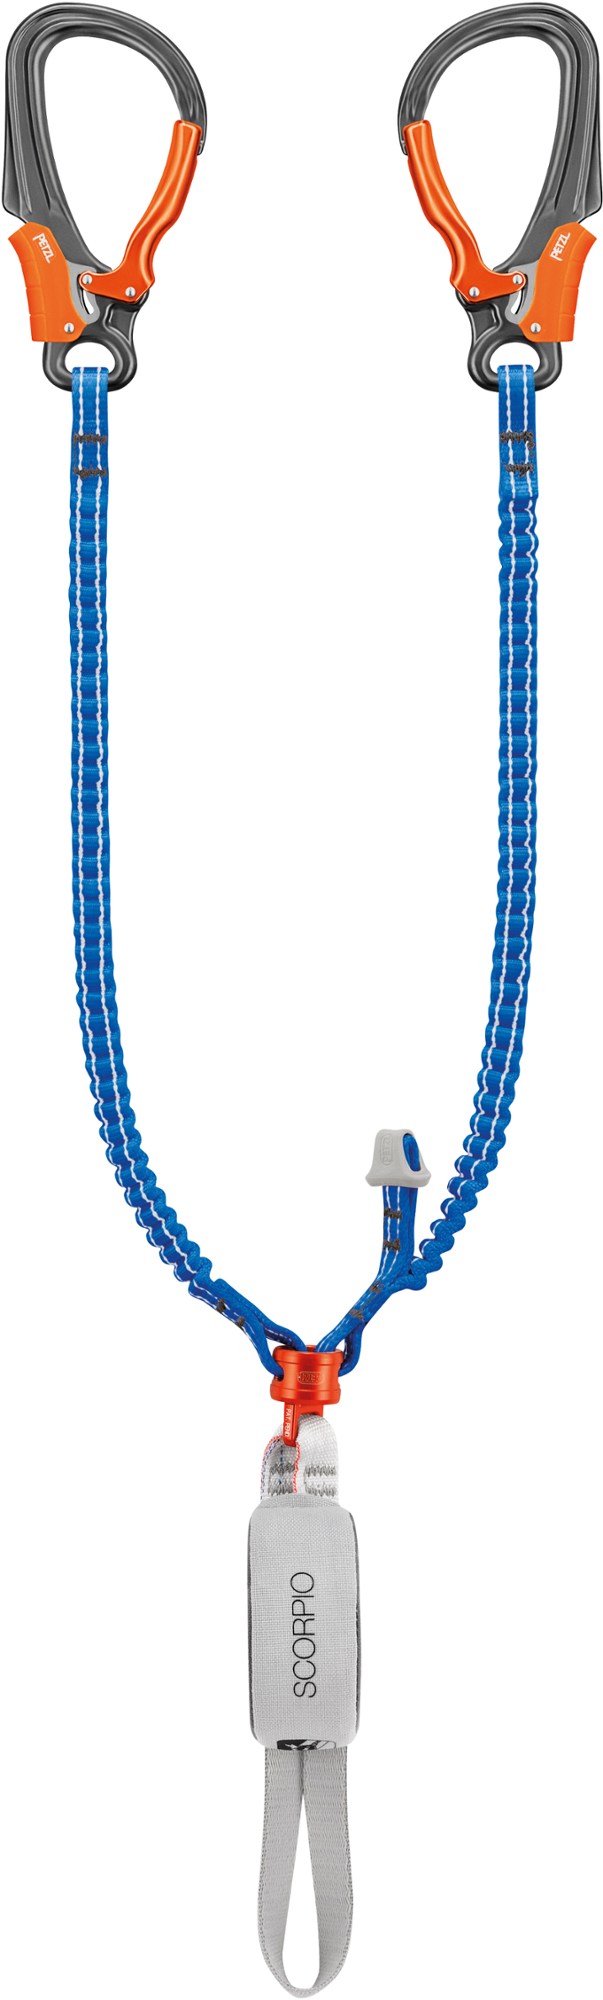 альпинистское снаряжение petzl зажим страховочный asap b070aa Ремешок с крючком Скорпион Petzl, синий